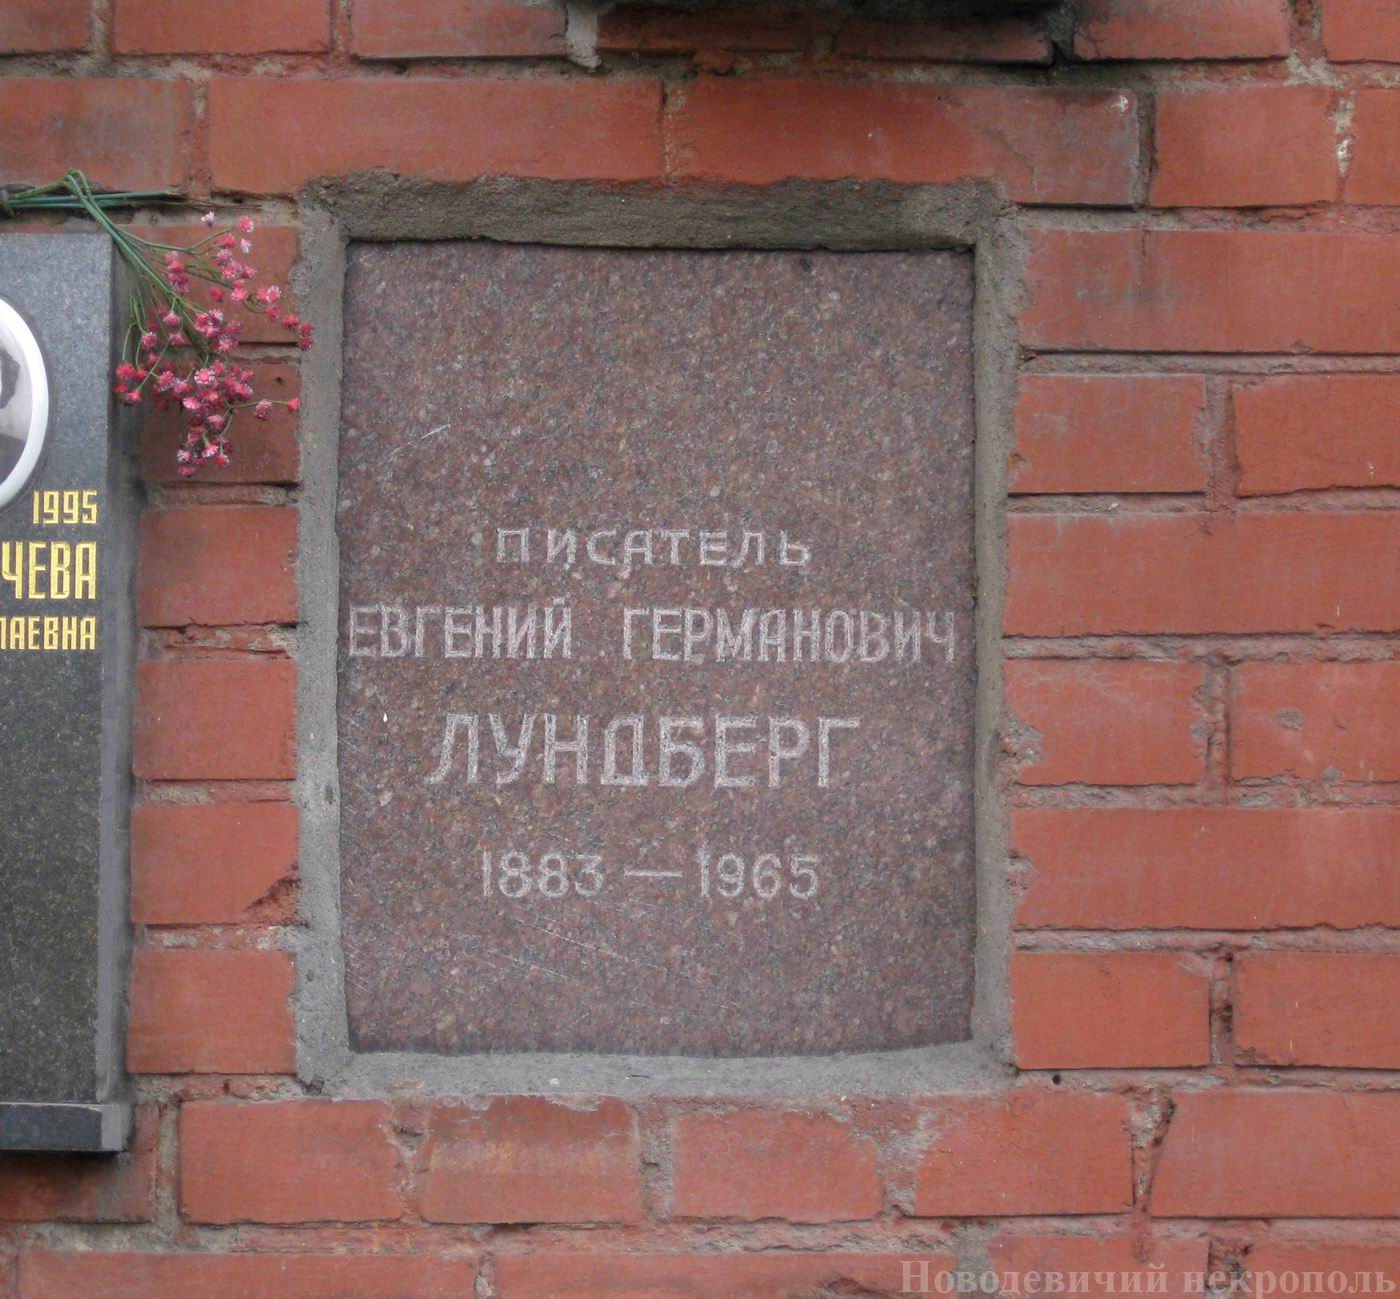 Плита на нише Лундберга Е.Г. (1883-1965), на Новодевичьем кладбище (колумбарий [121]-11-3).